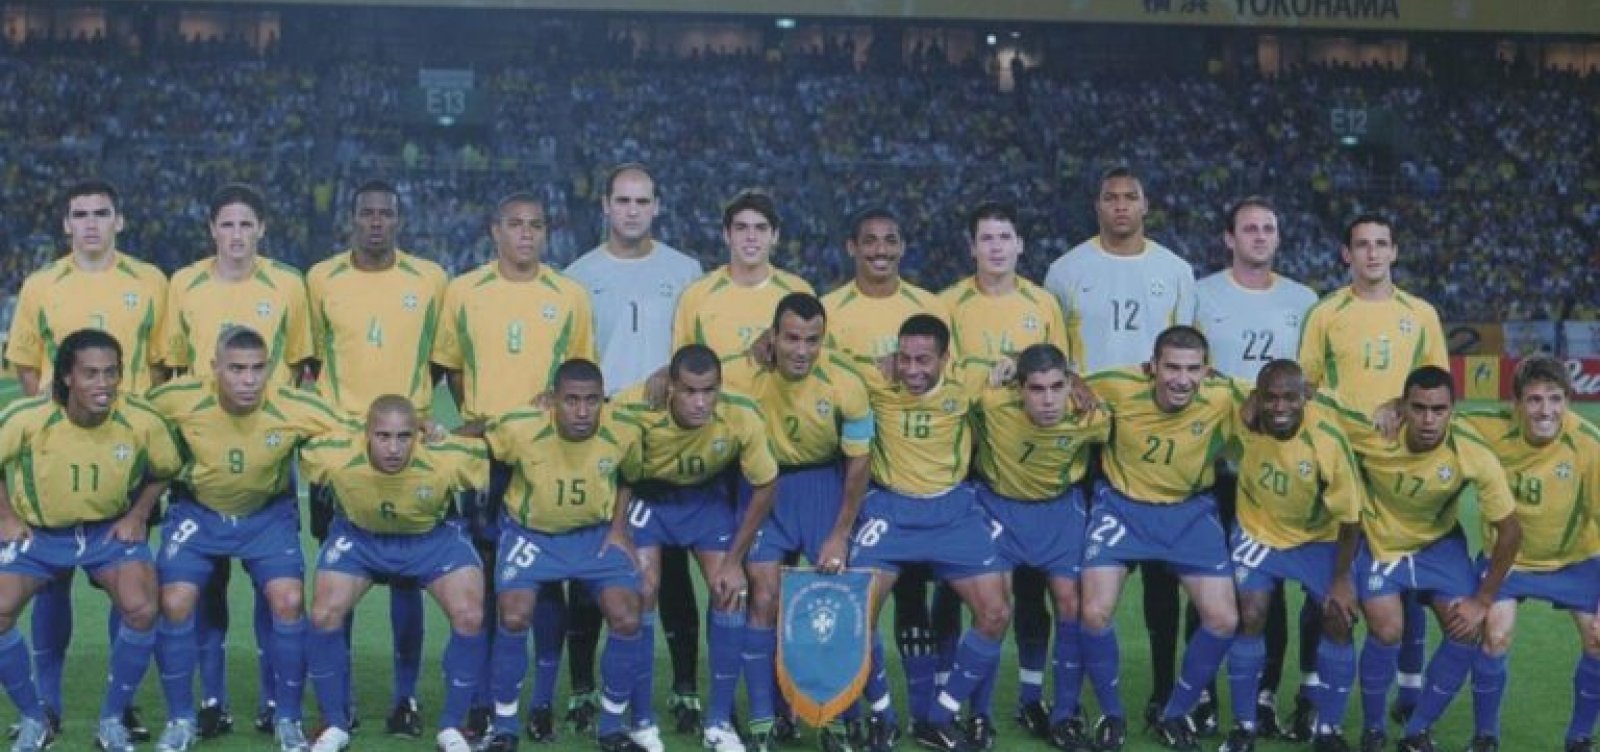 Há exatos 20 anos, Brasil conquistava penta com Seleção Scolari dos 'super R'